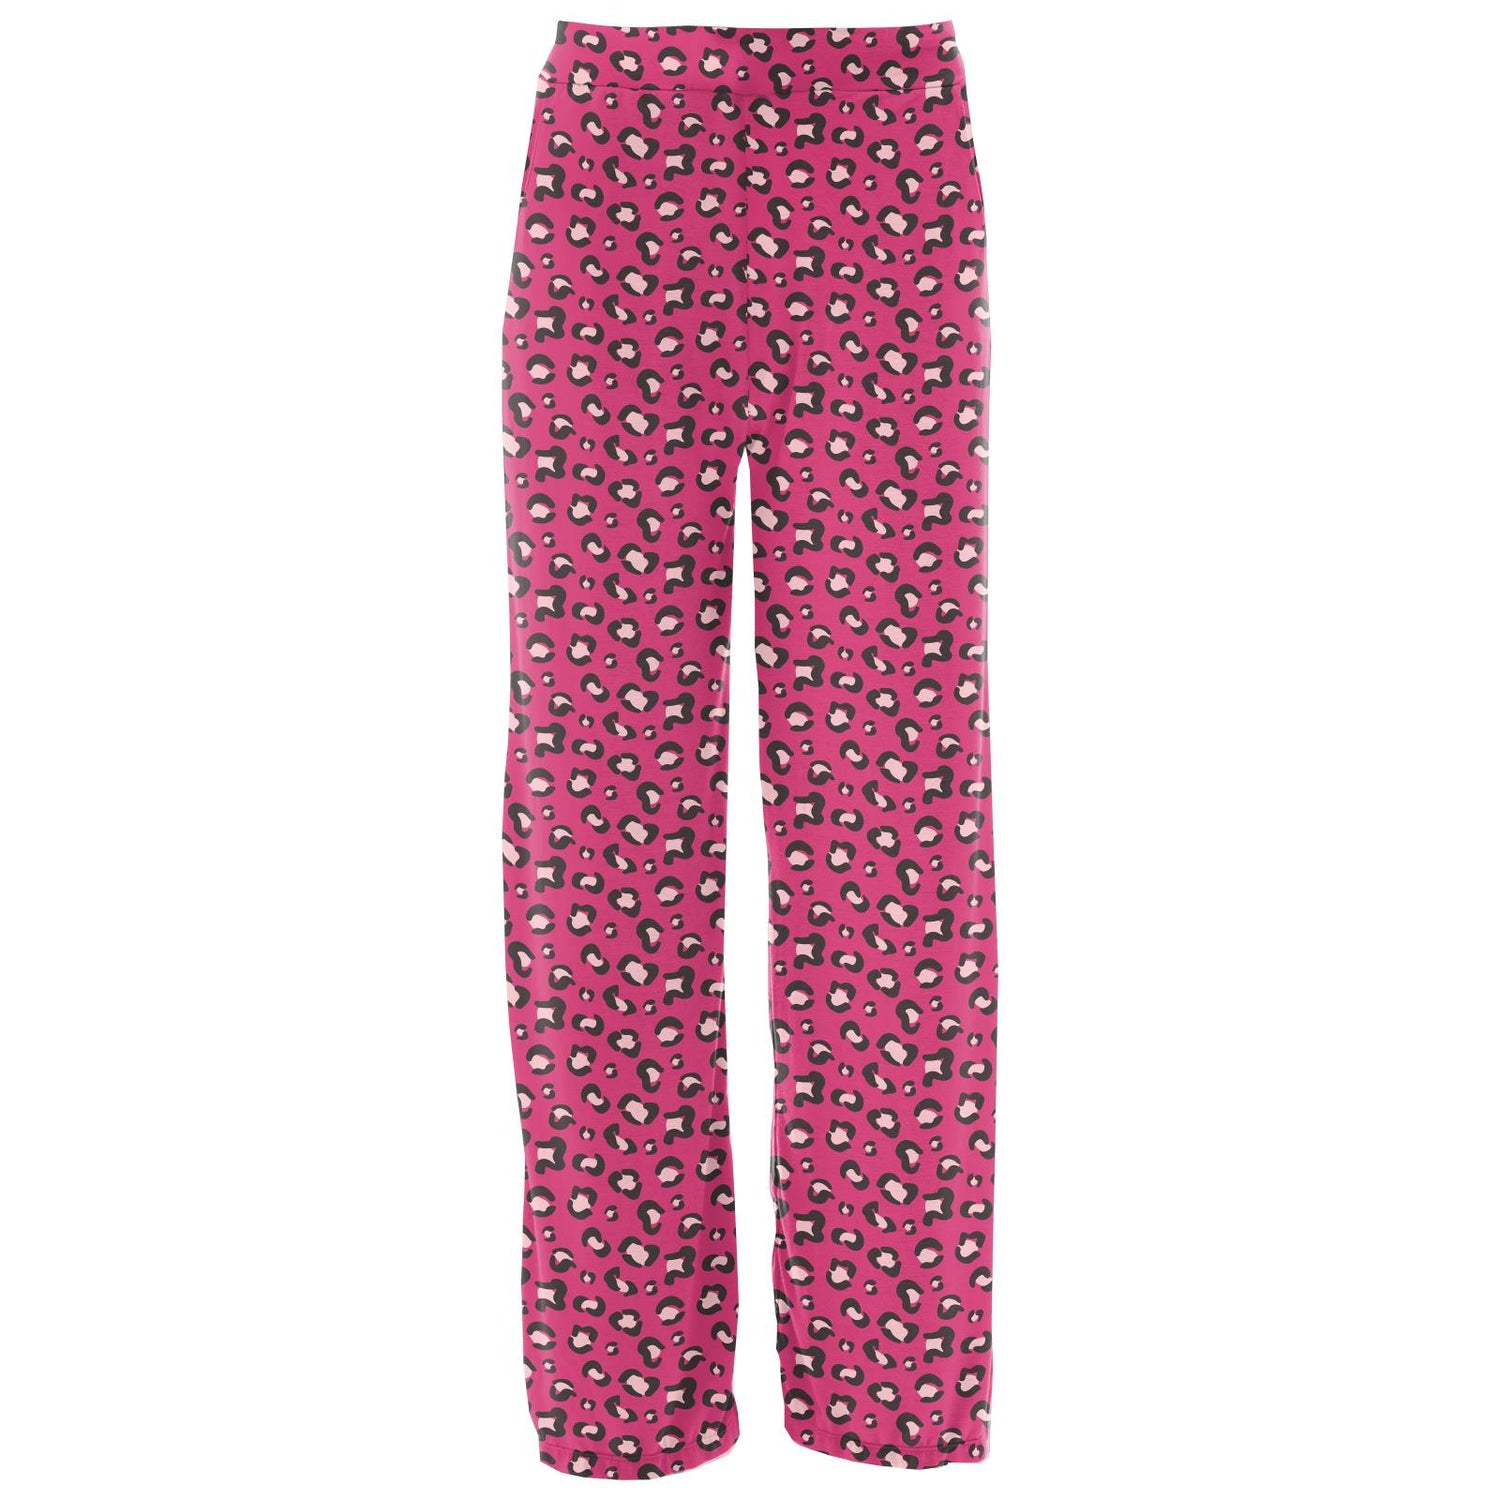 Women's Print Pajama Pants in Calypso Cheetah Print